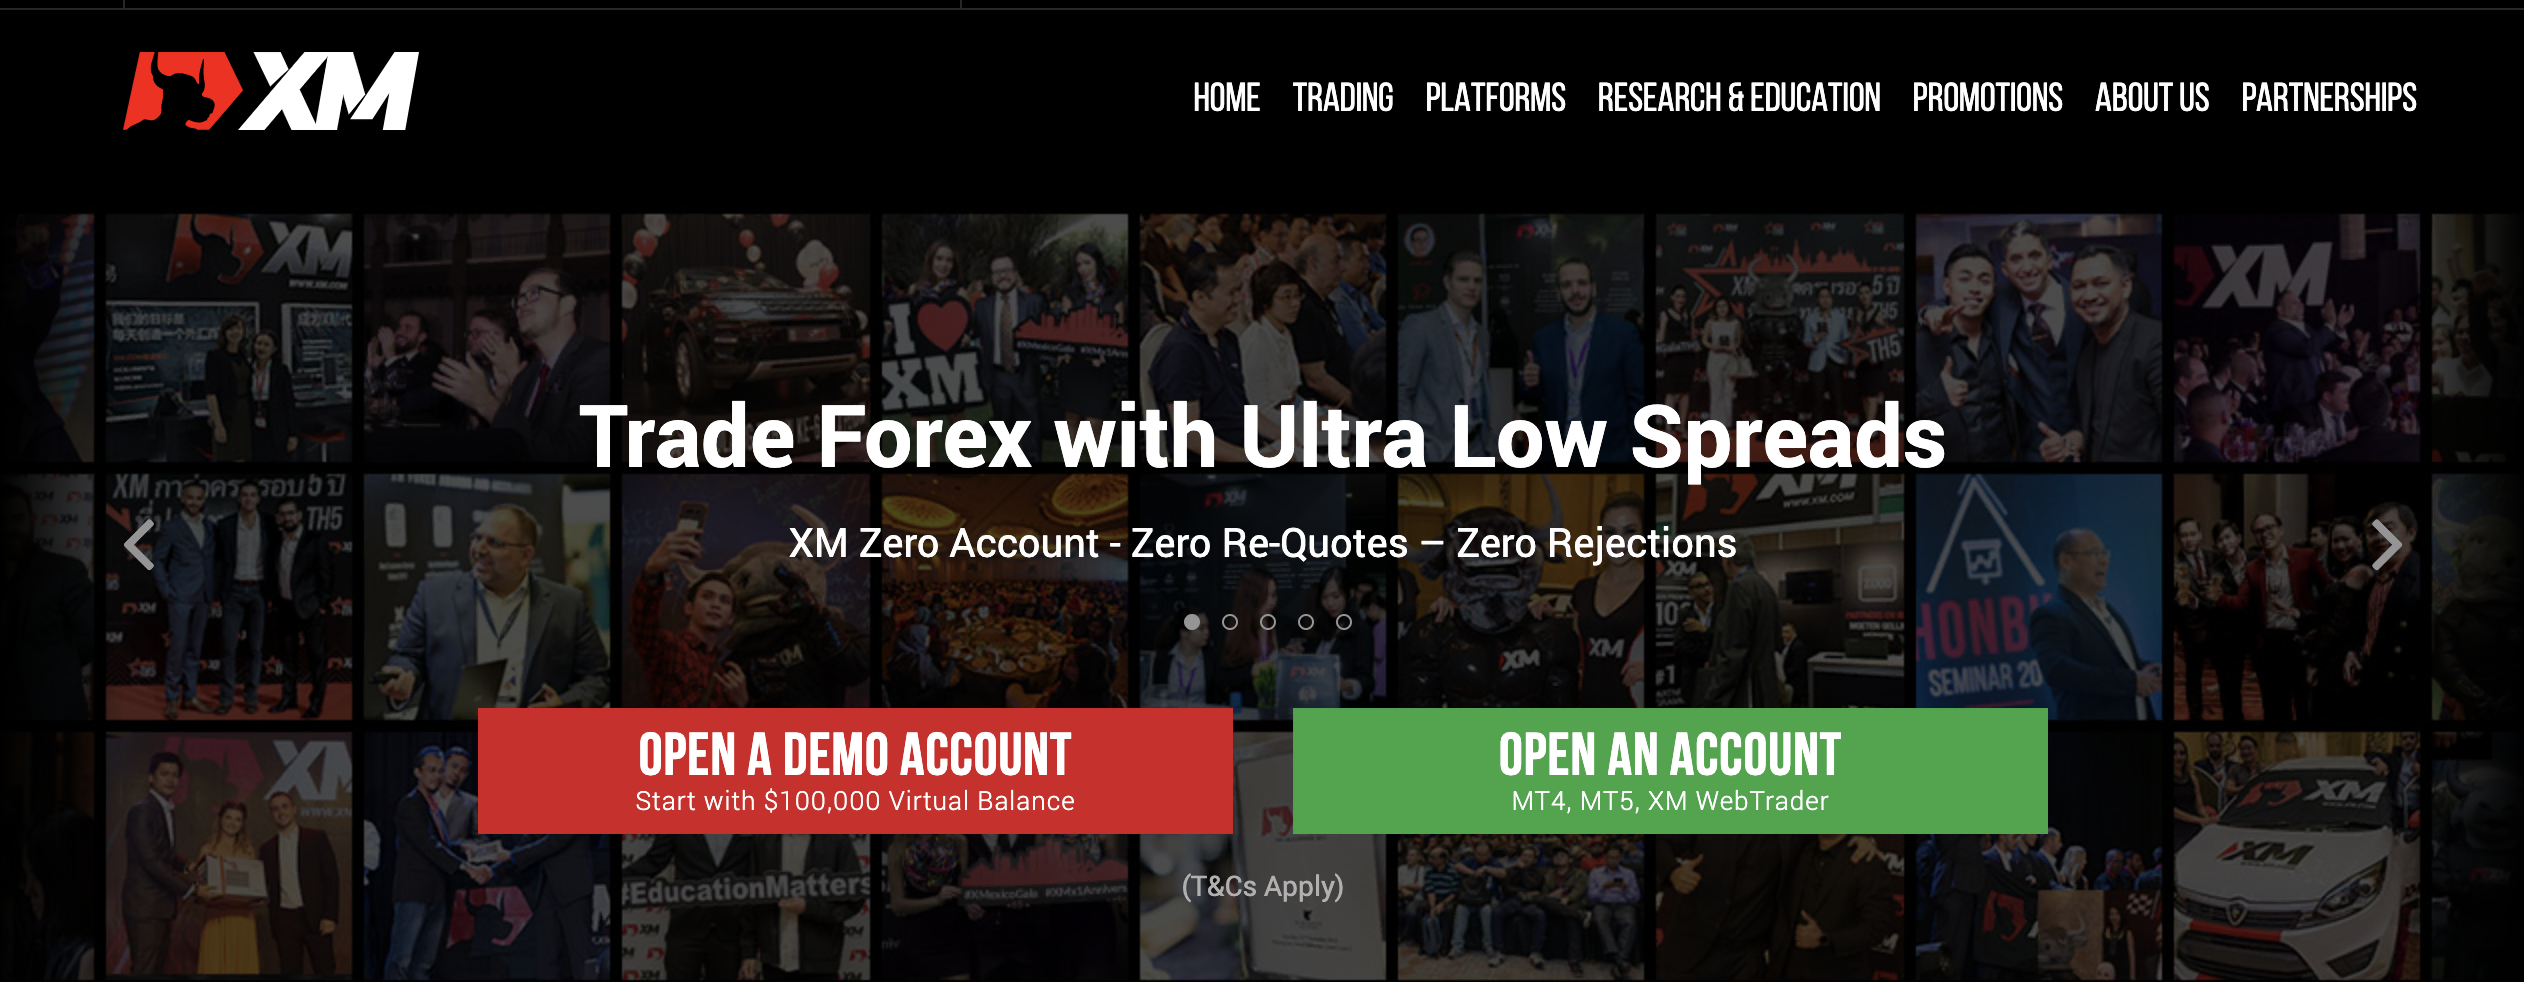 De officiële website van de forex broker XM